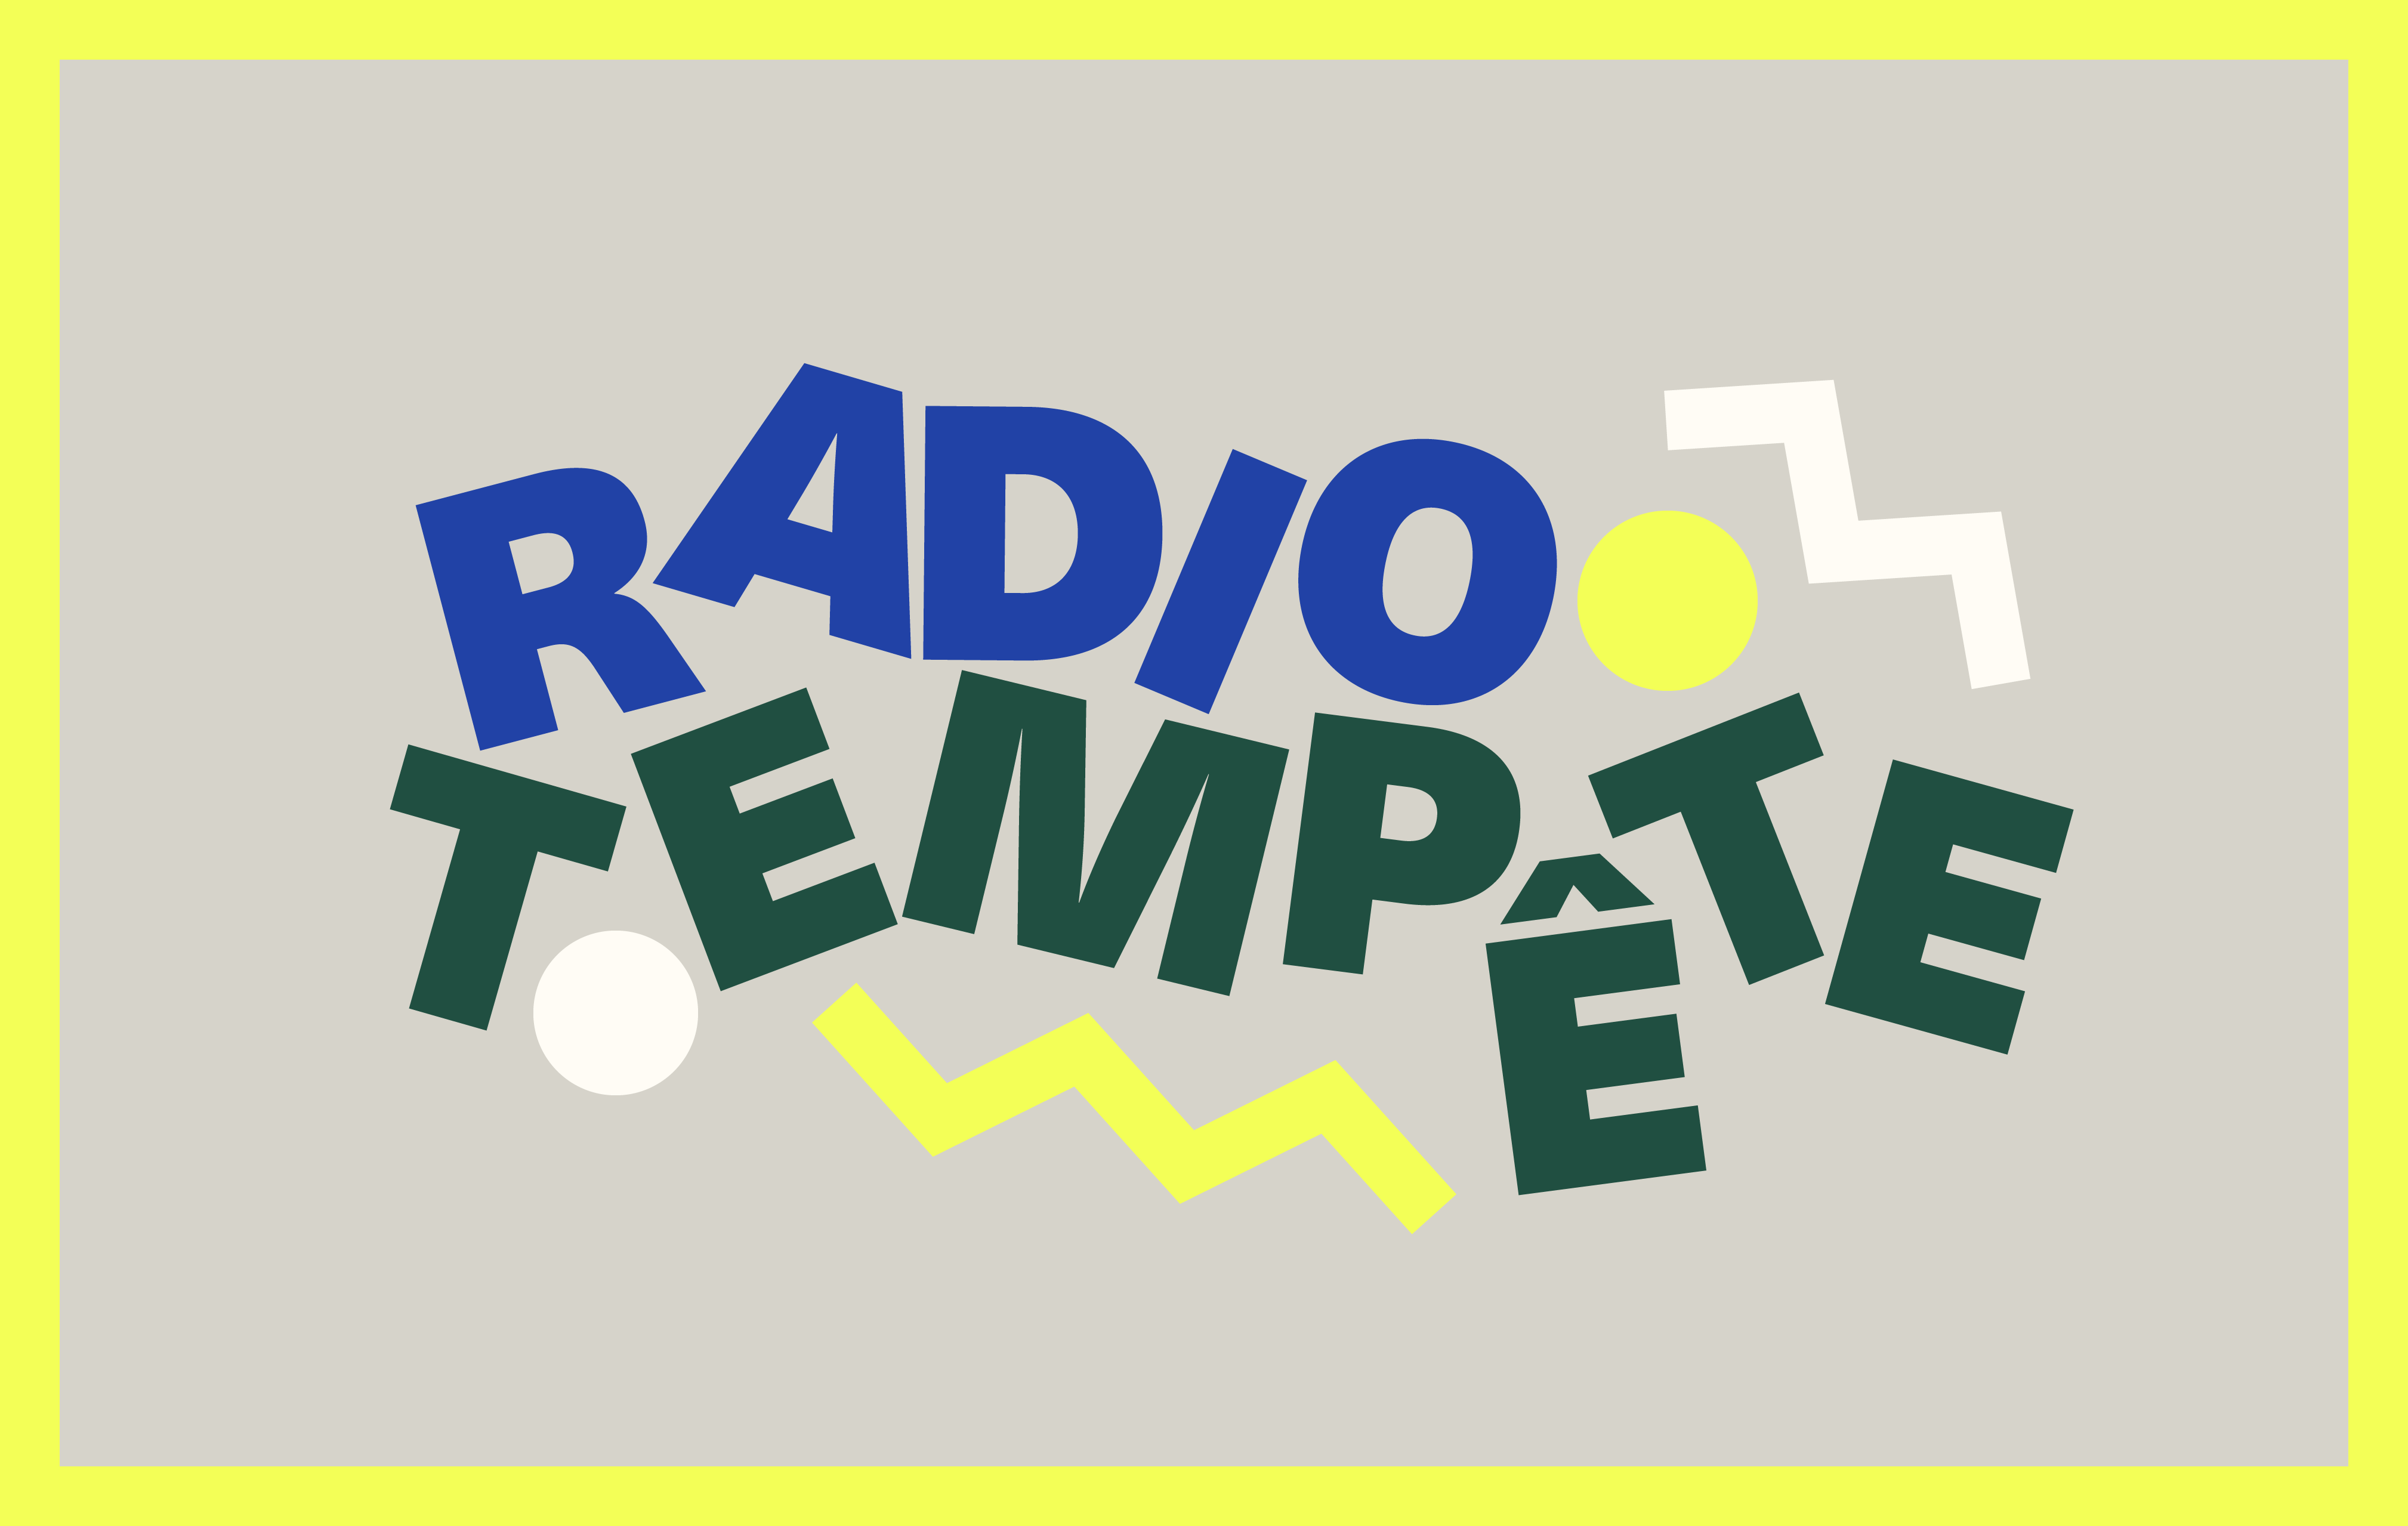 Logo de Radio Tempête, une webradio qui diffuse des meufs cis et trans, des personnes non-binaires. En bref, sans mecs cis hétéros